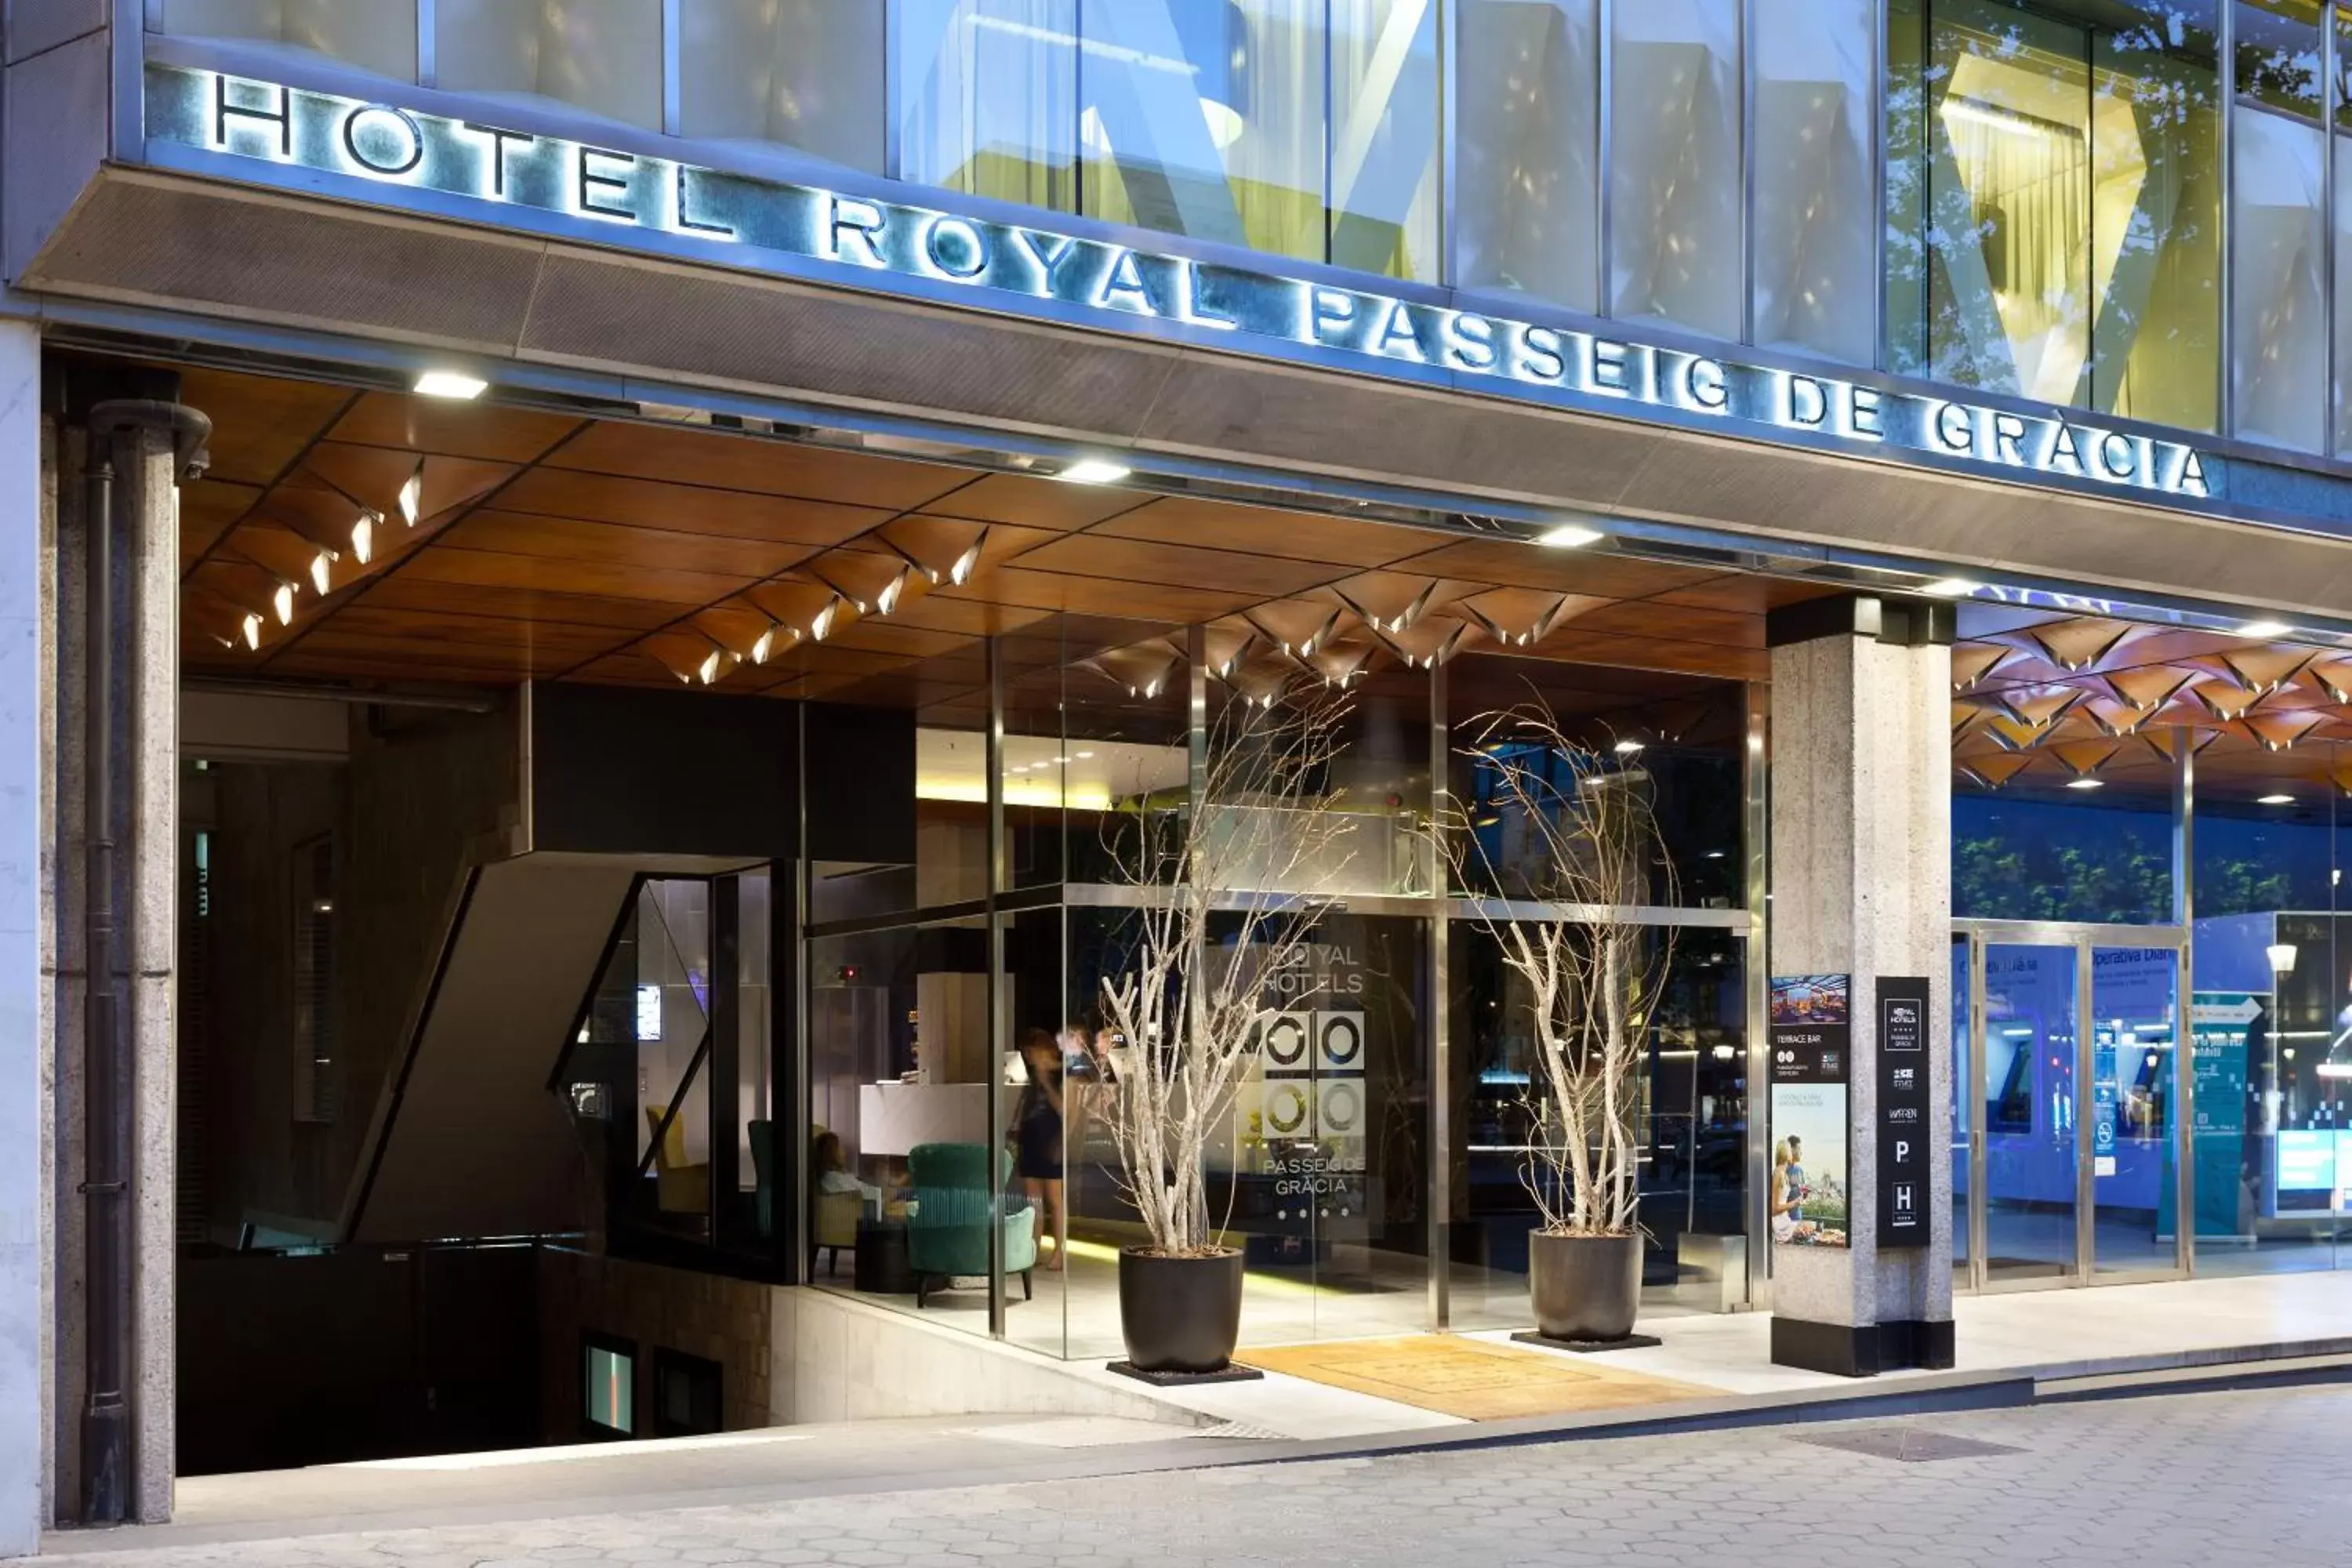 Facade/entrance in Hotel Royal Passeig de Gracia